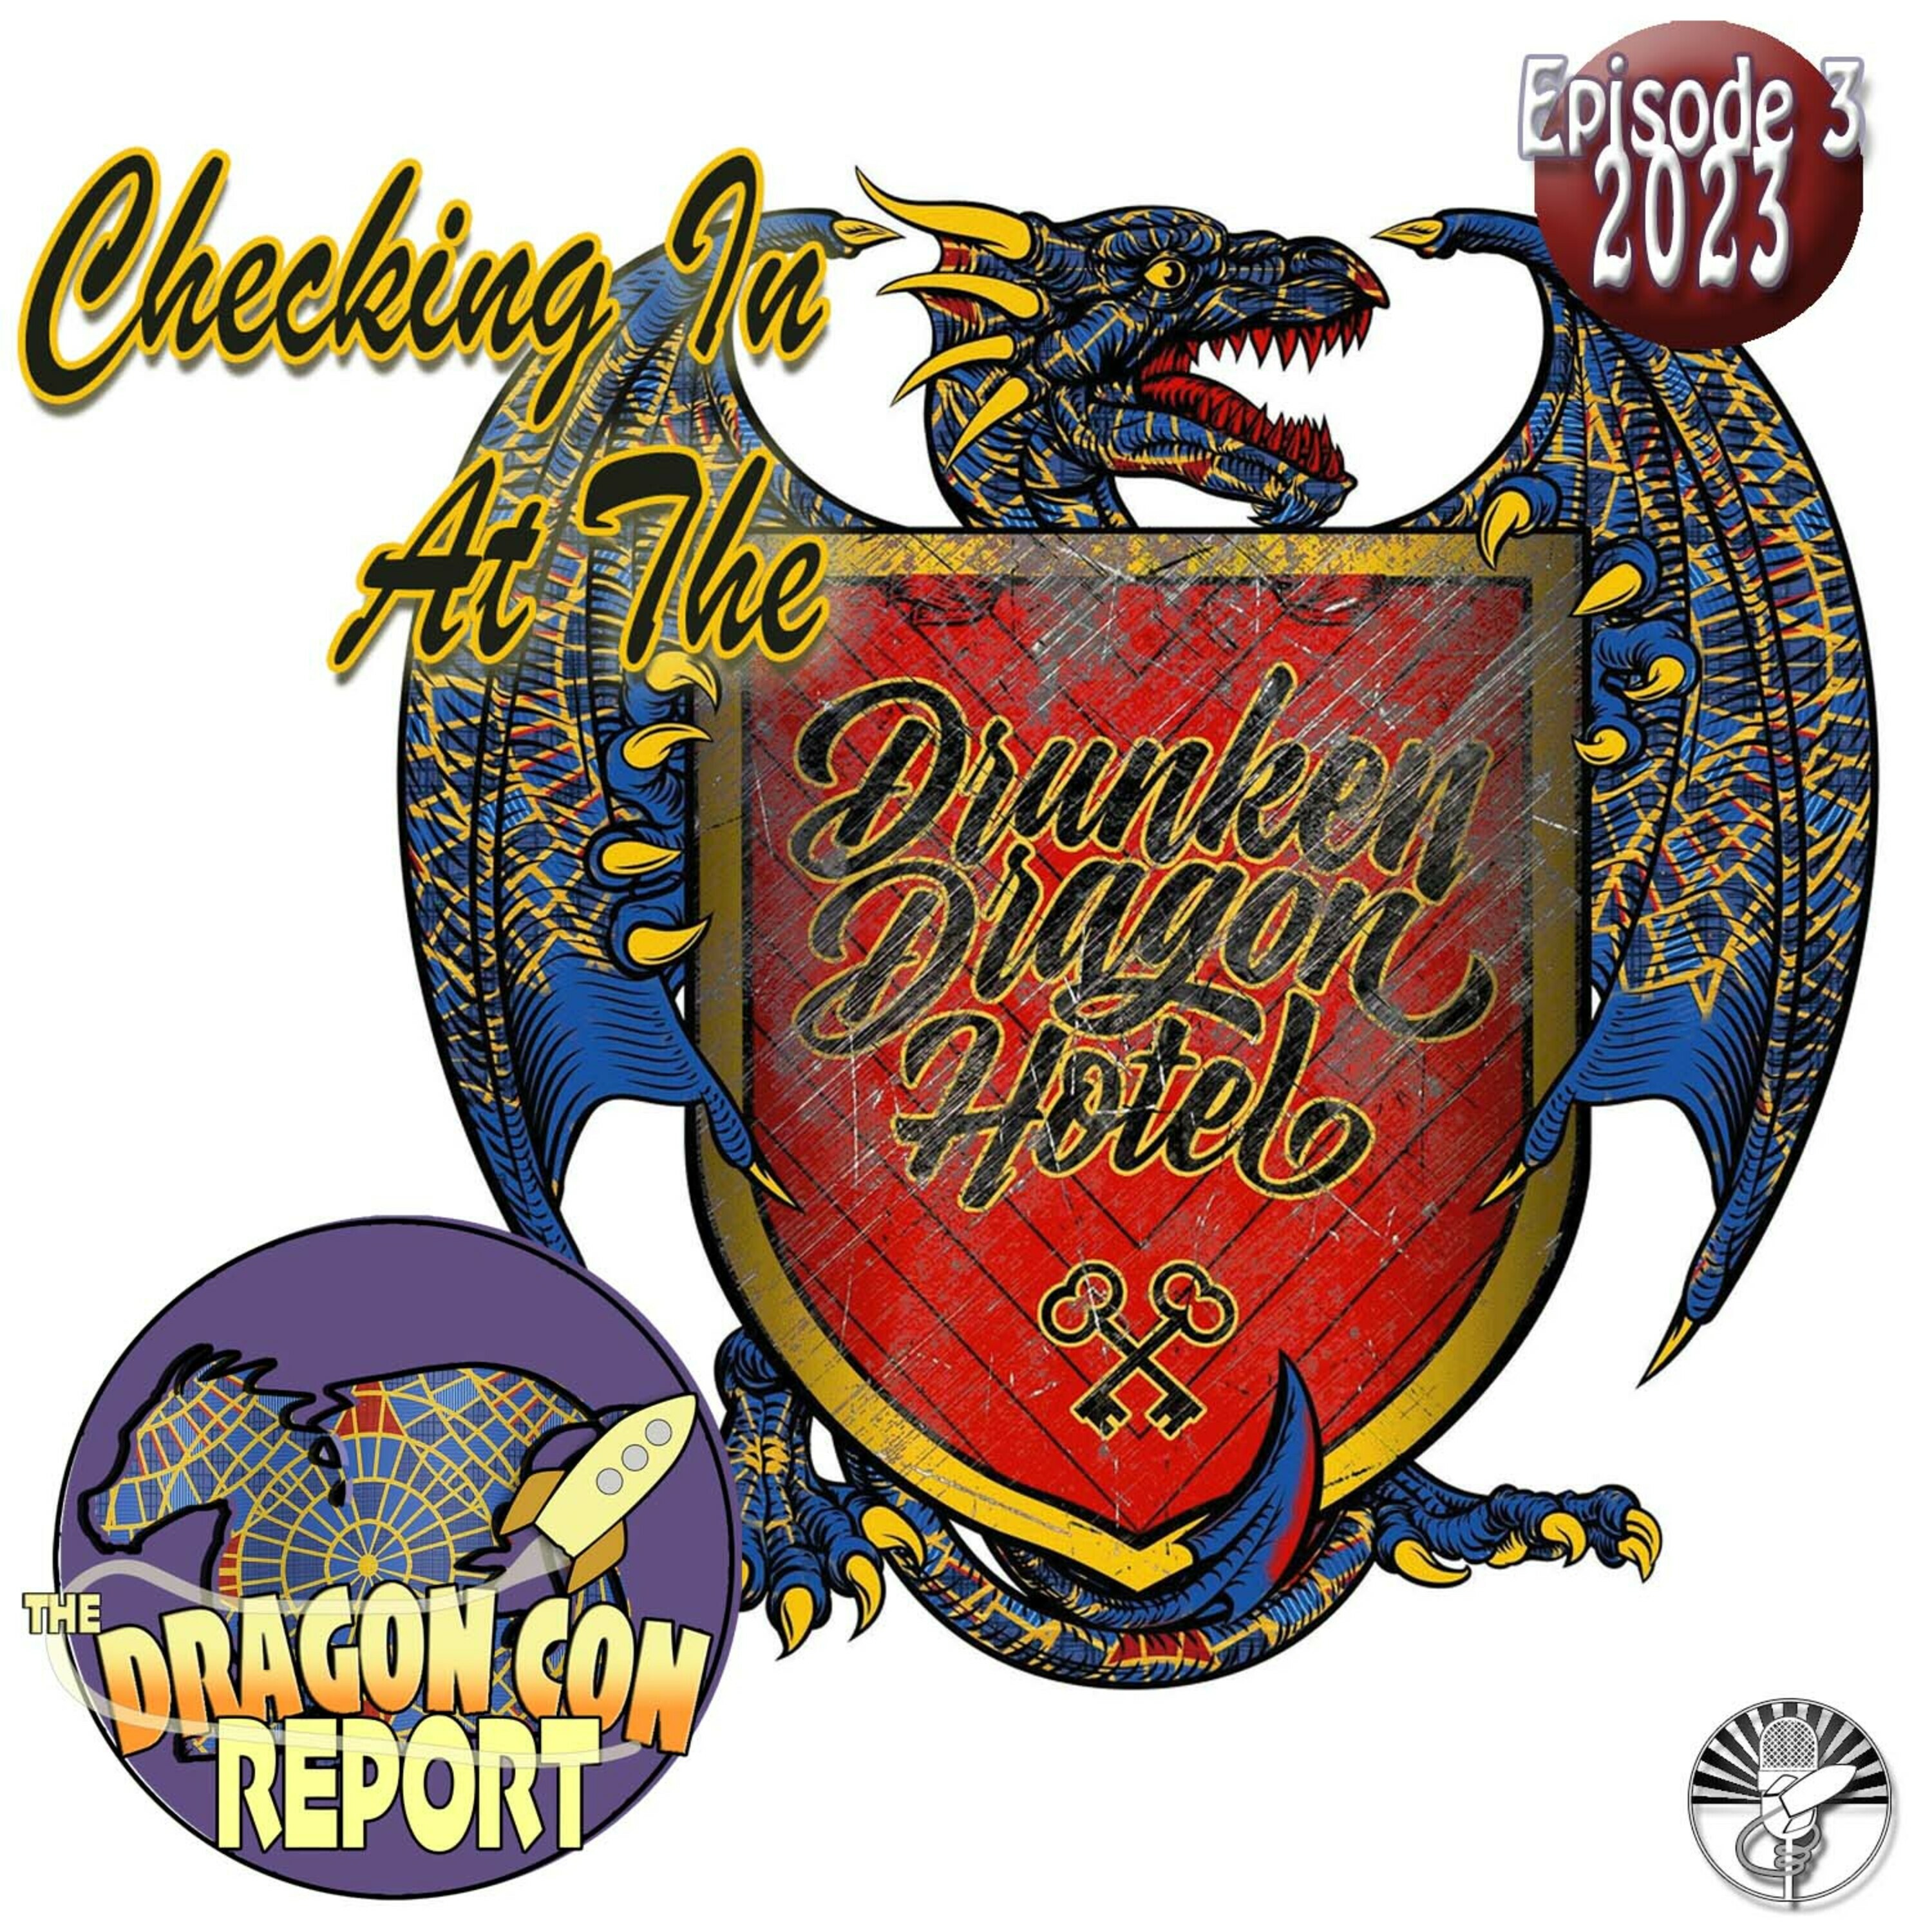 The 2023 Dragon Con Report Episode 3